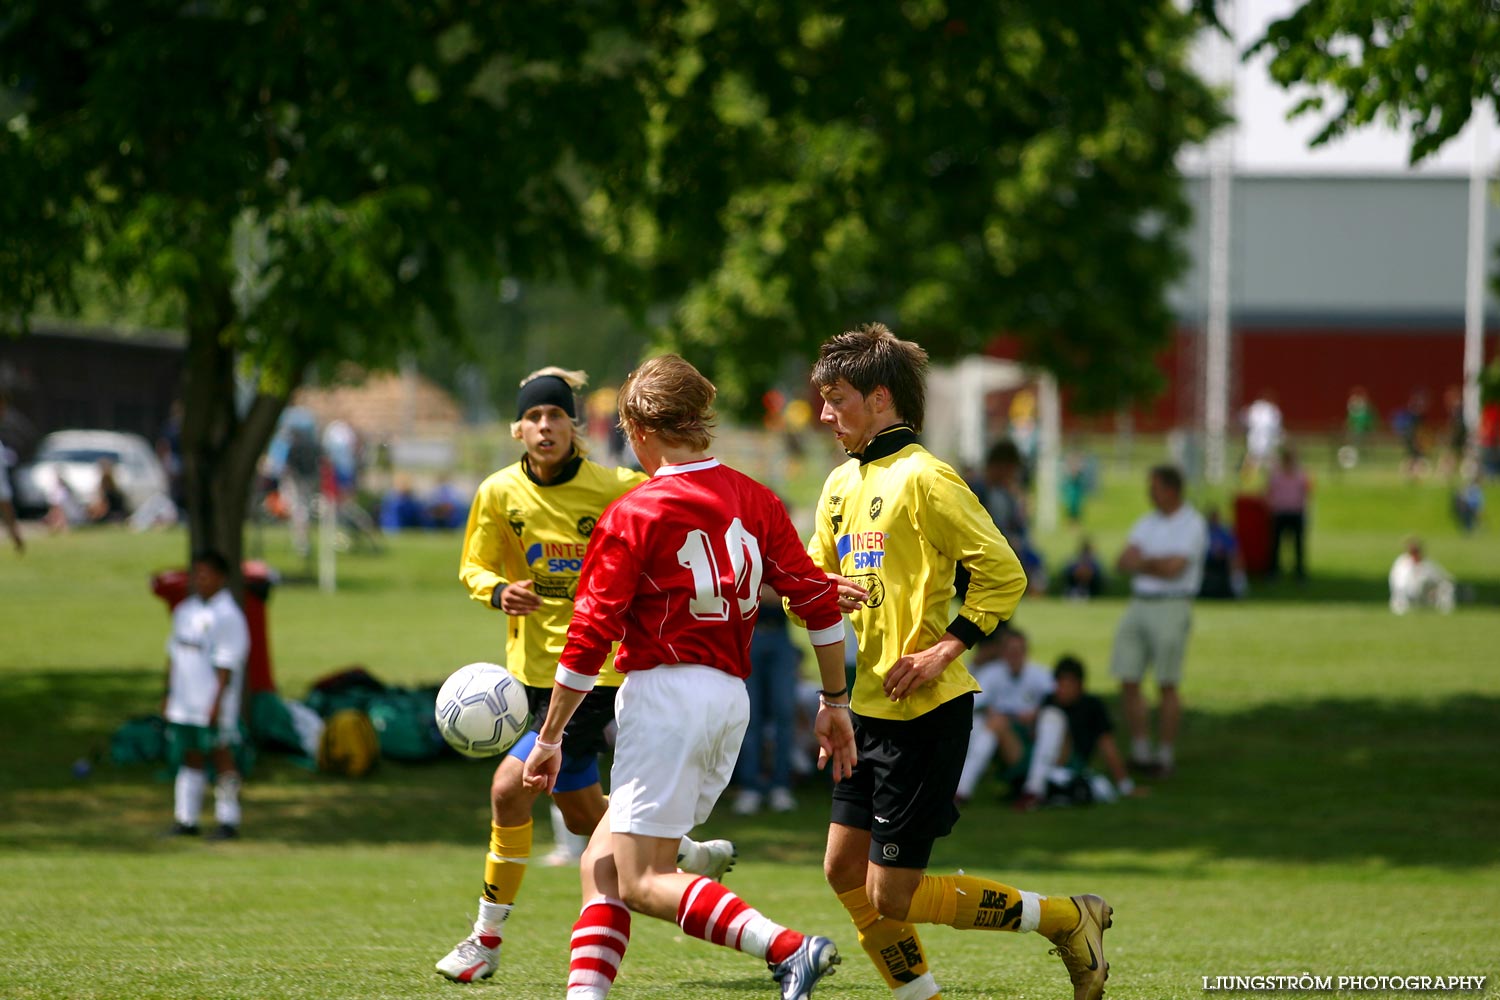 Skadevi Cup 2005 Fredag,mix,Lillegårdens IP,Skövde,Sverige,Fotboll,,2005,119458